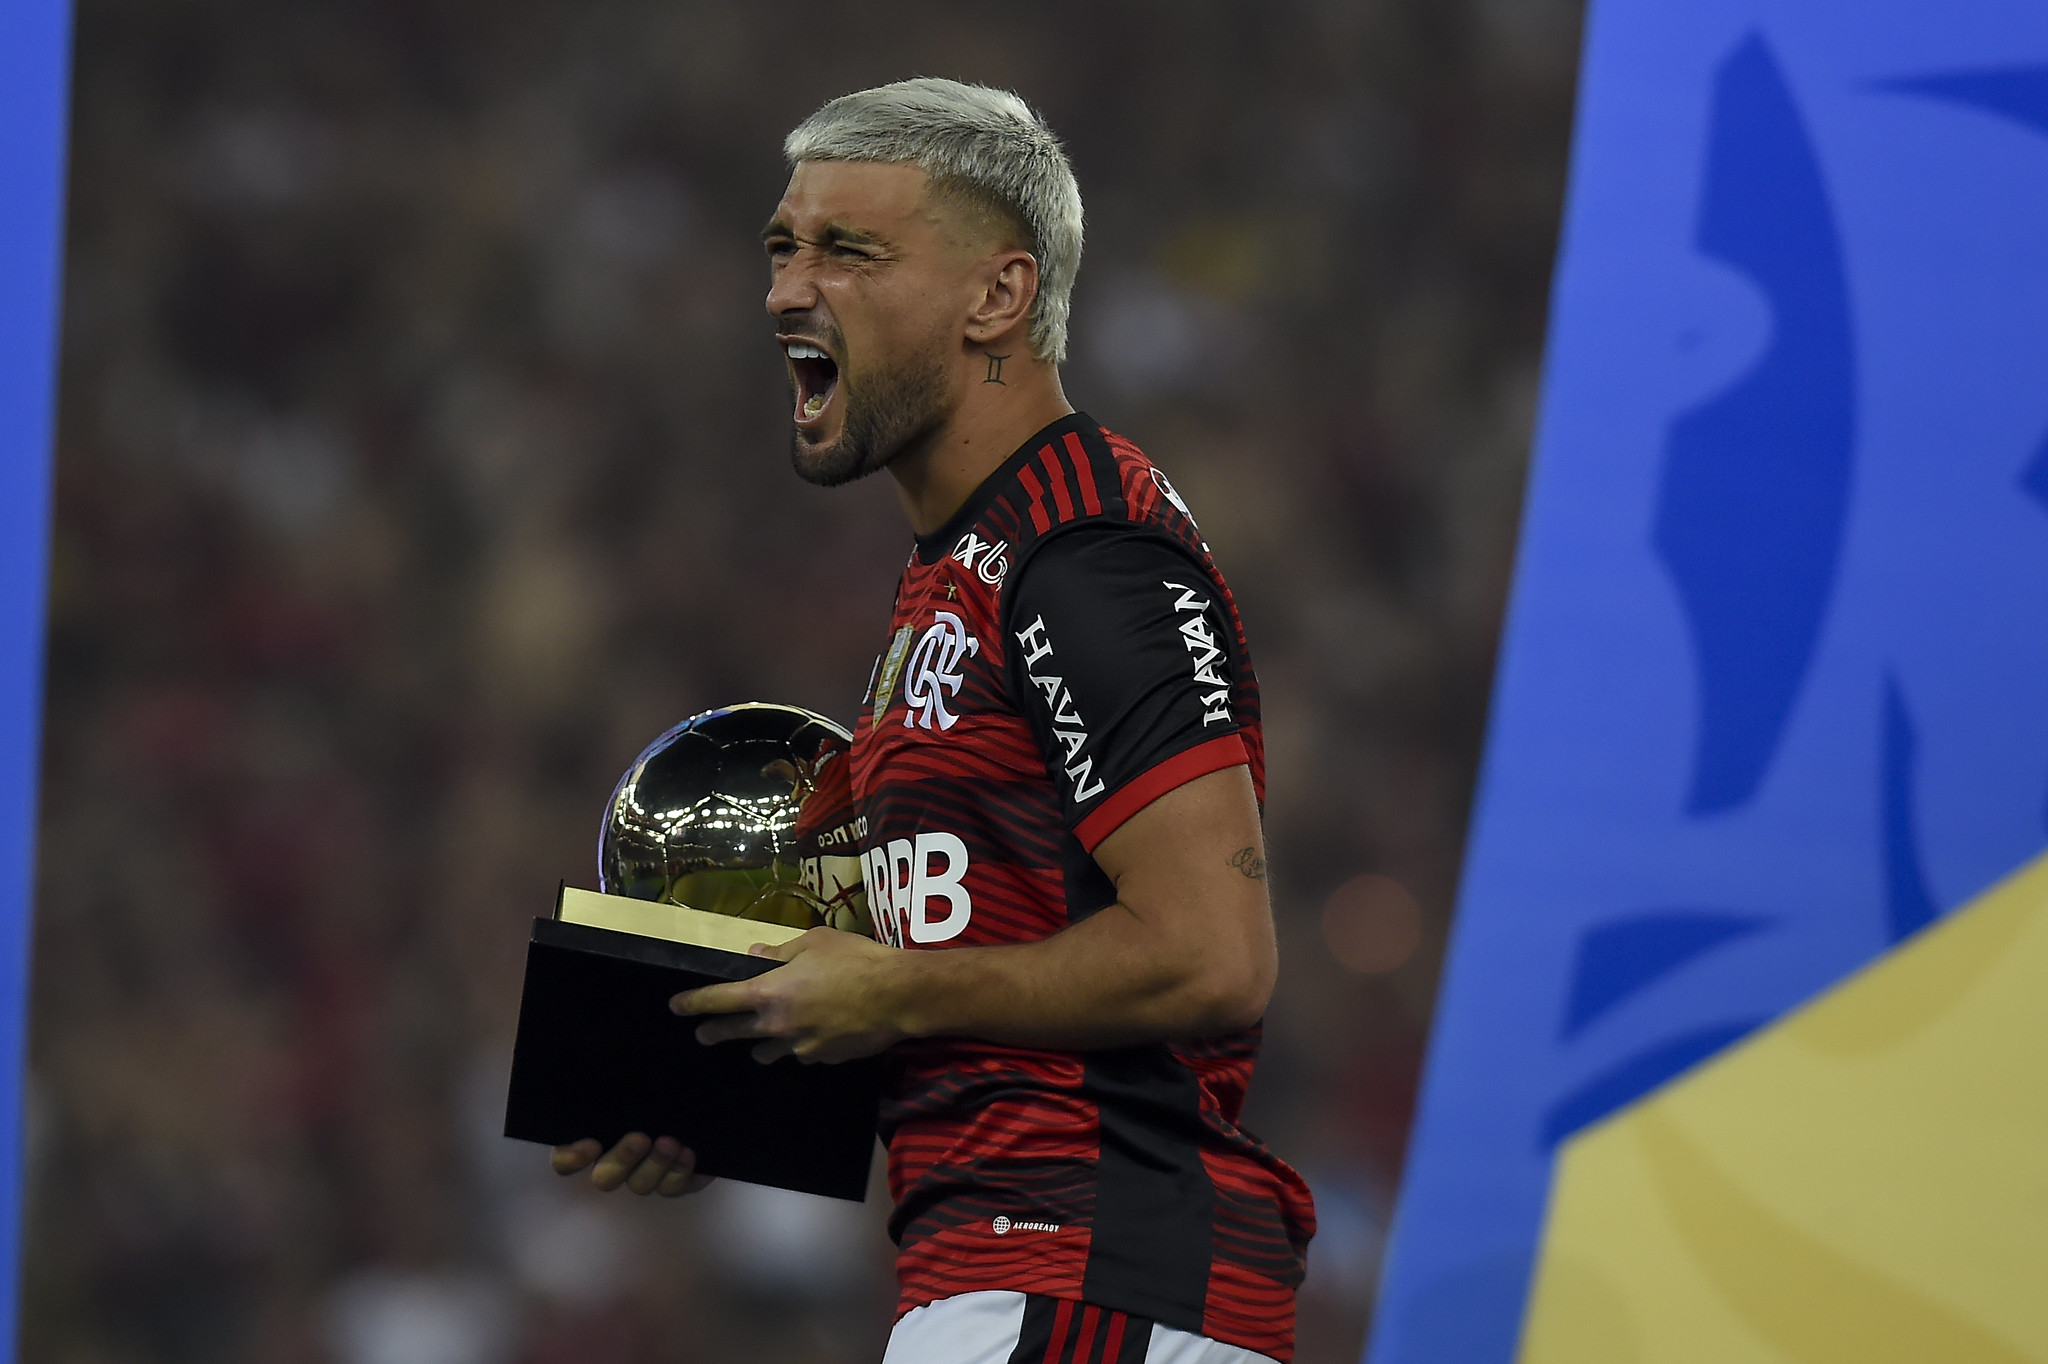 Cássio vence prêmio de melhor goleiro da Copa do Brasil